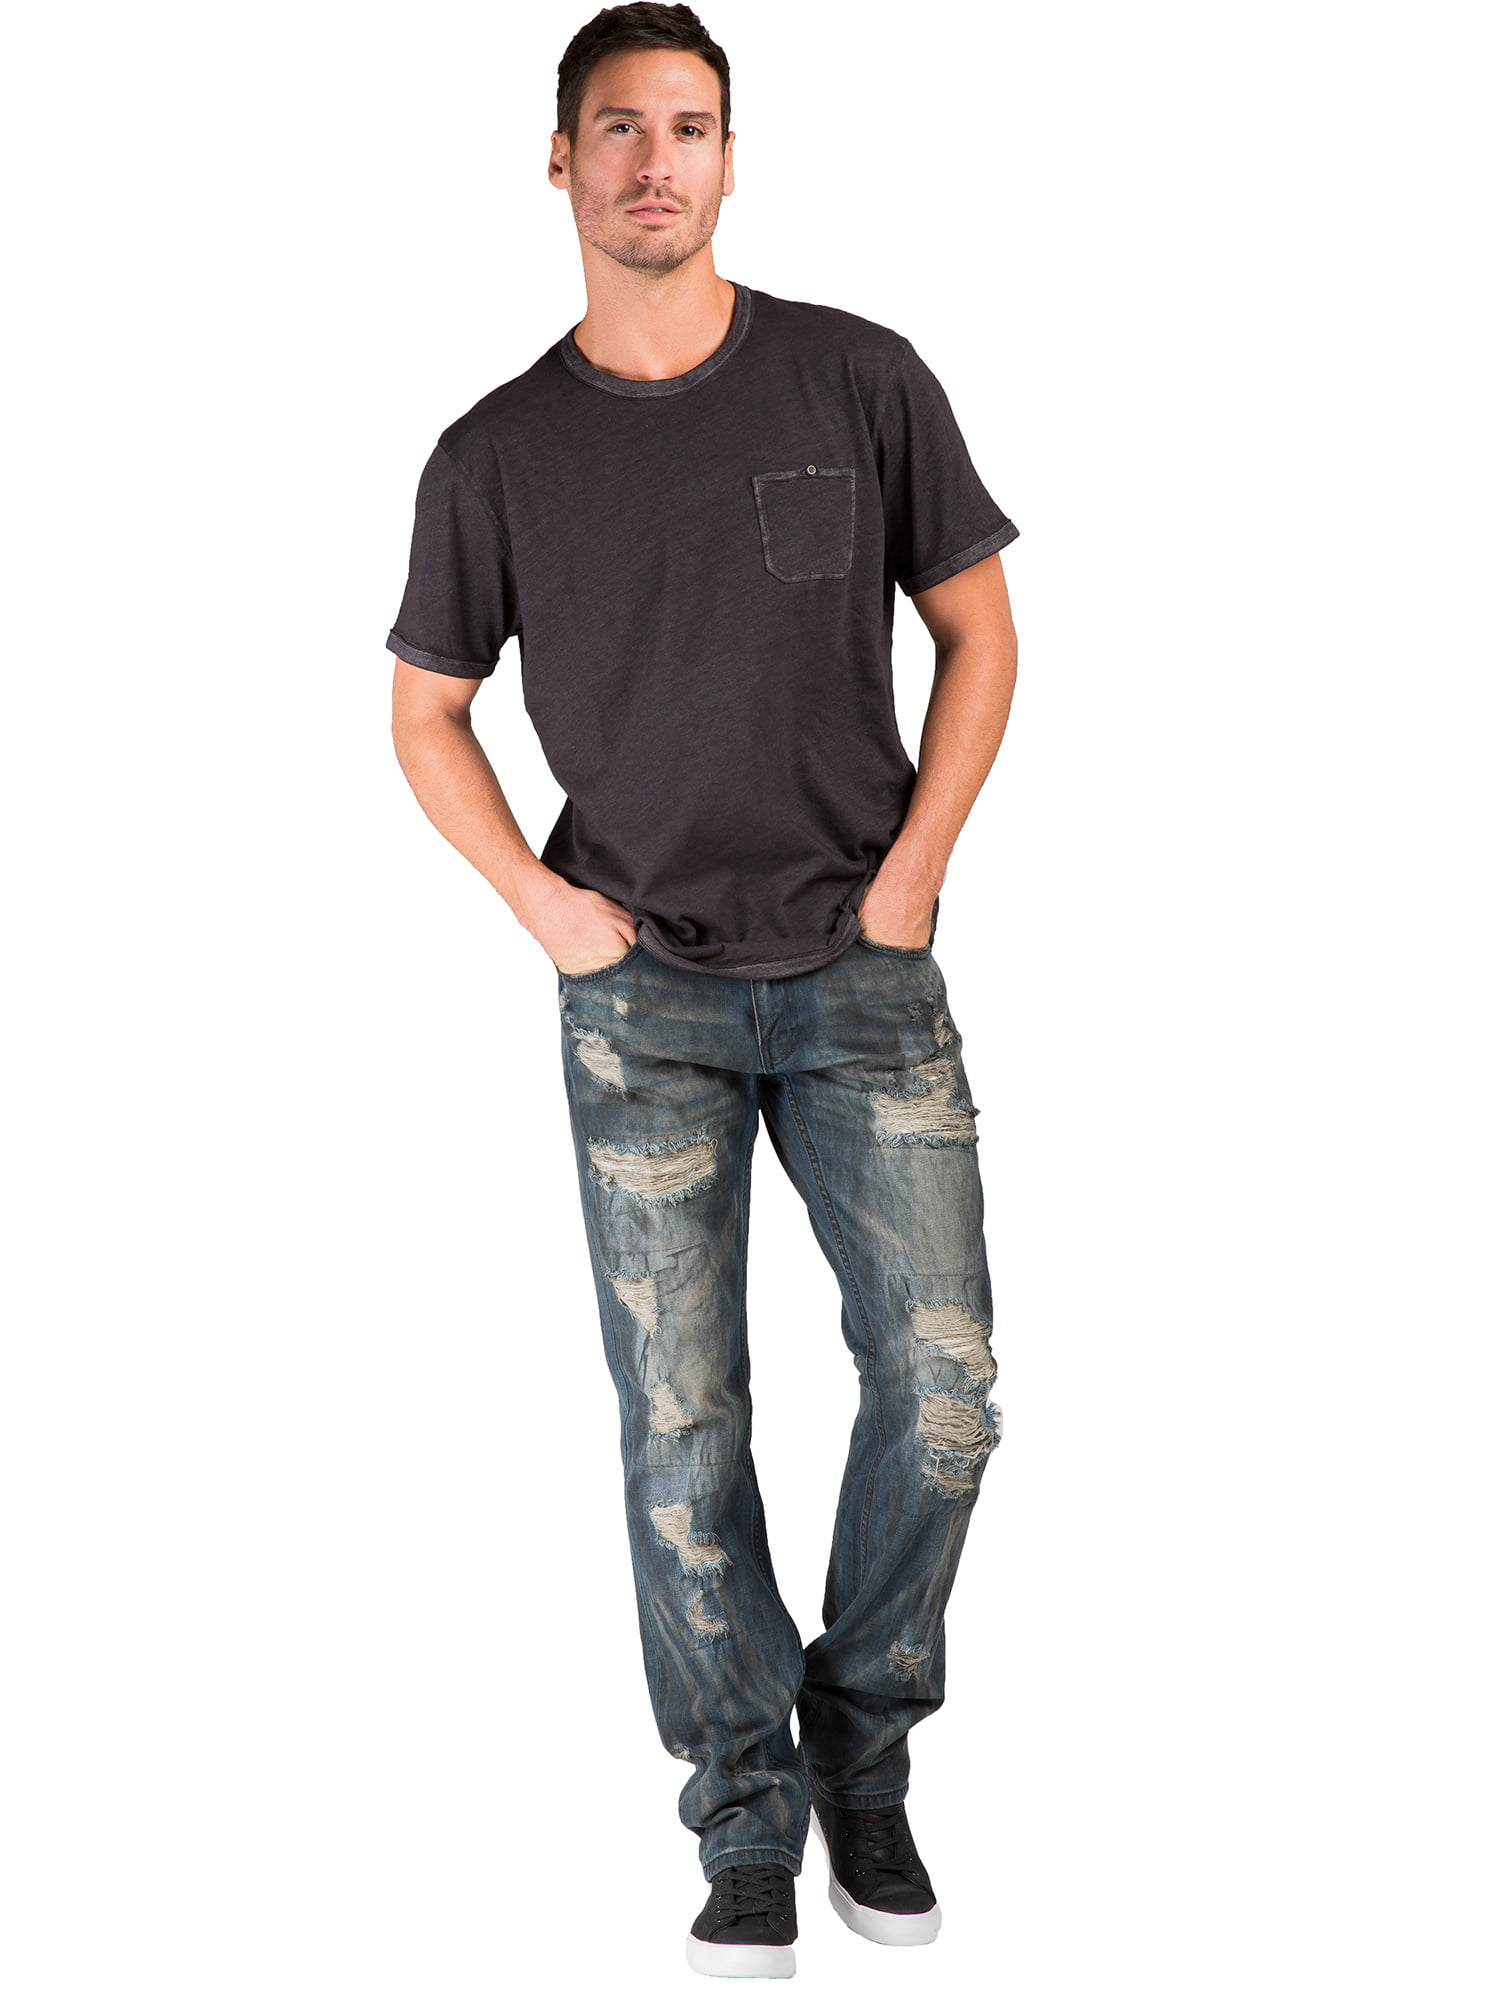 Level 7 Mens Premium Jeans Slim Straight Khaki Tint Destroyed & Mended 